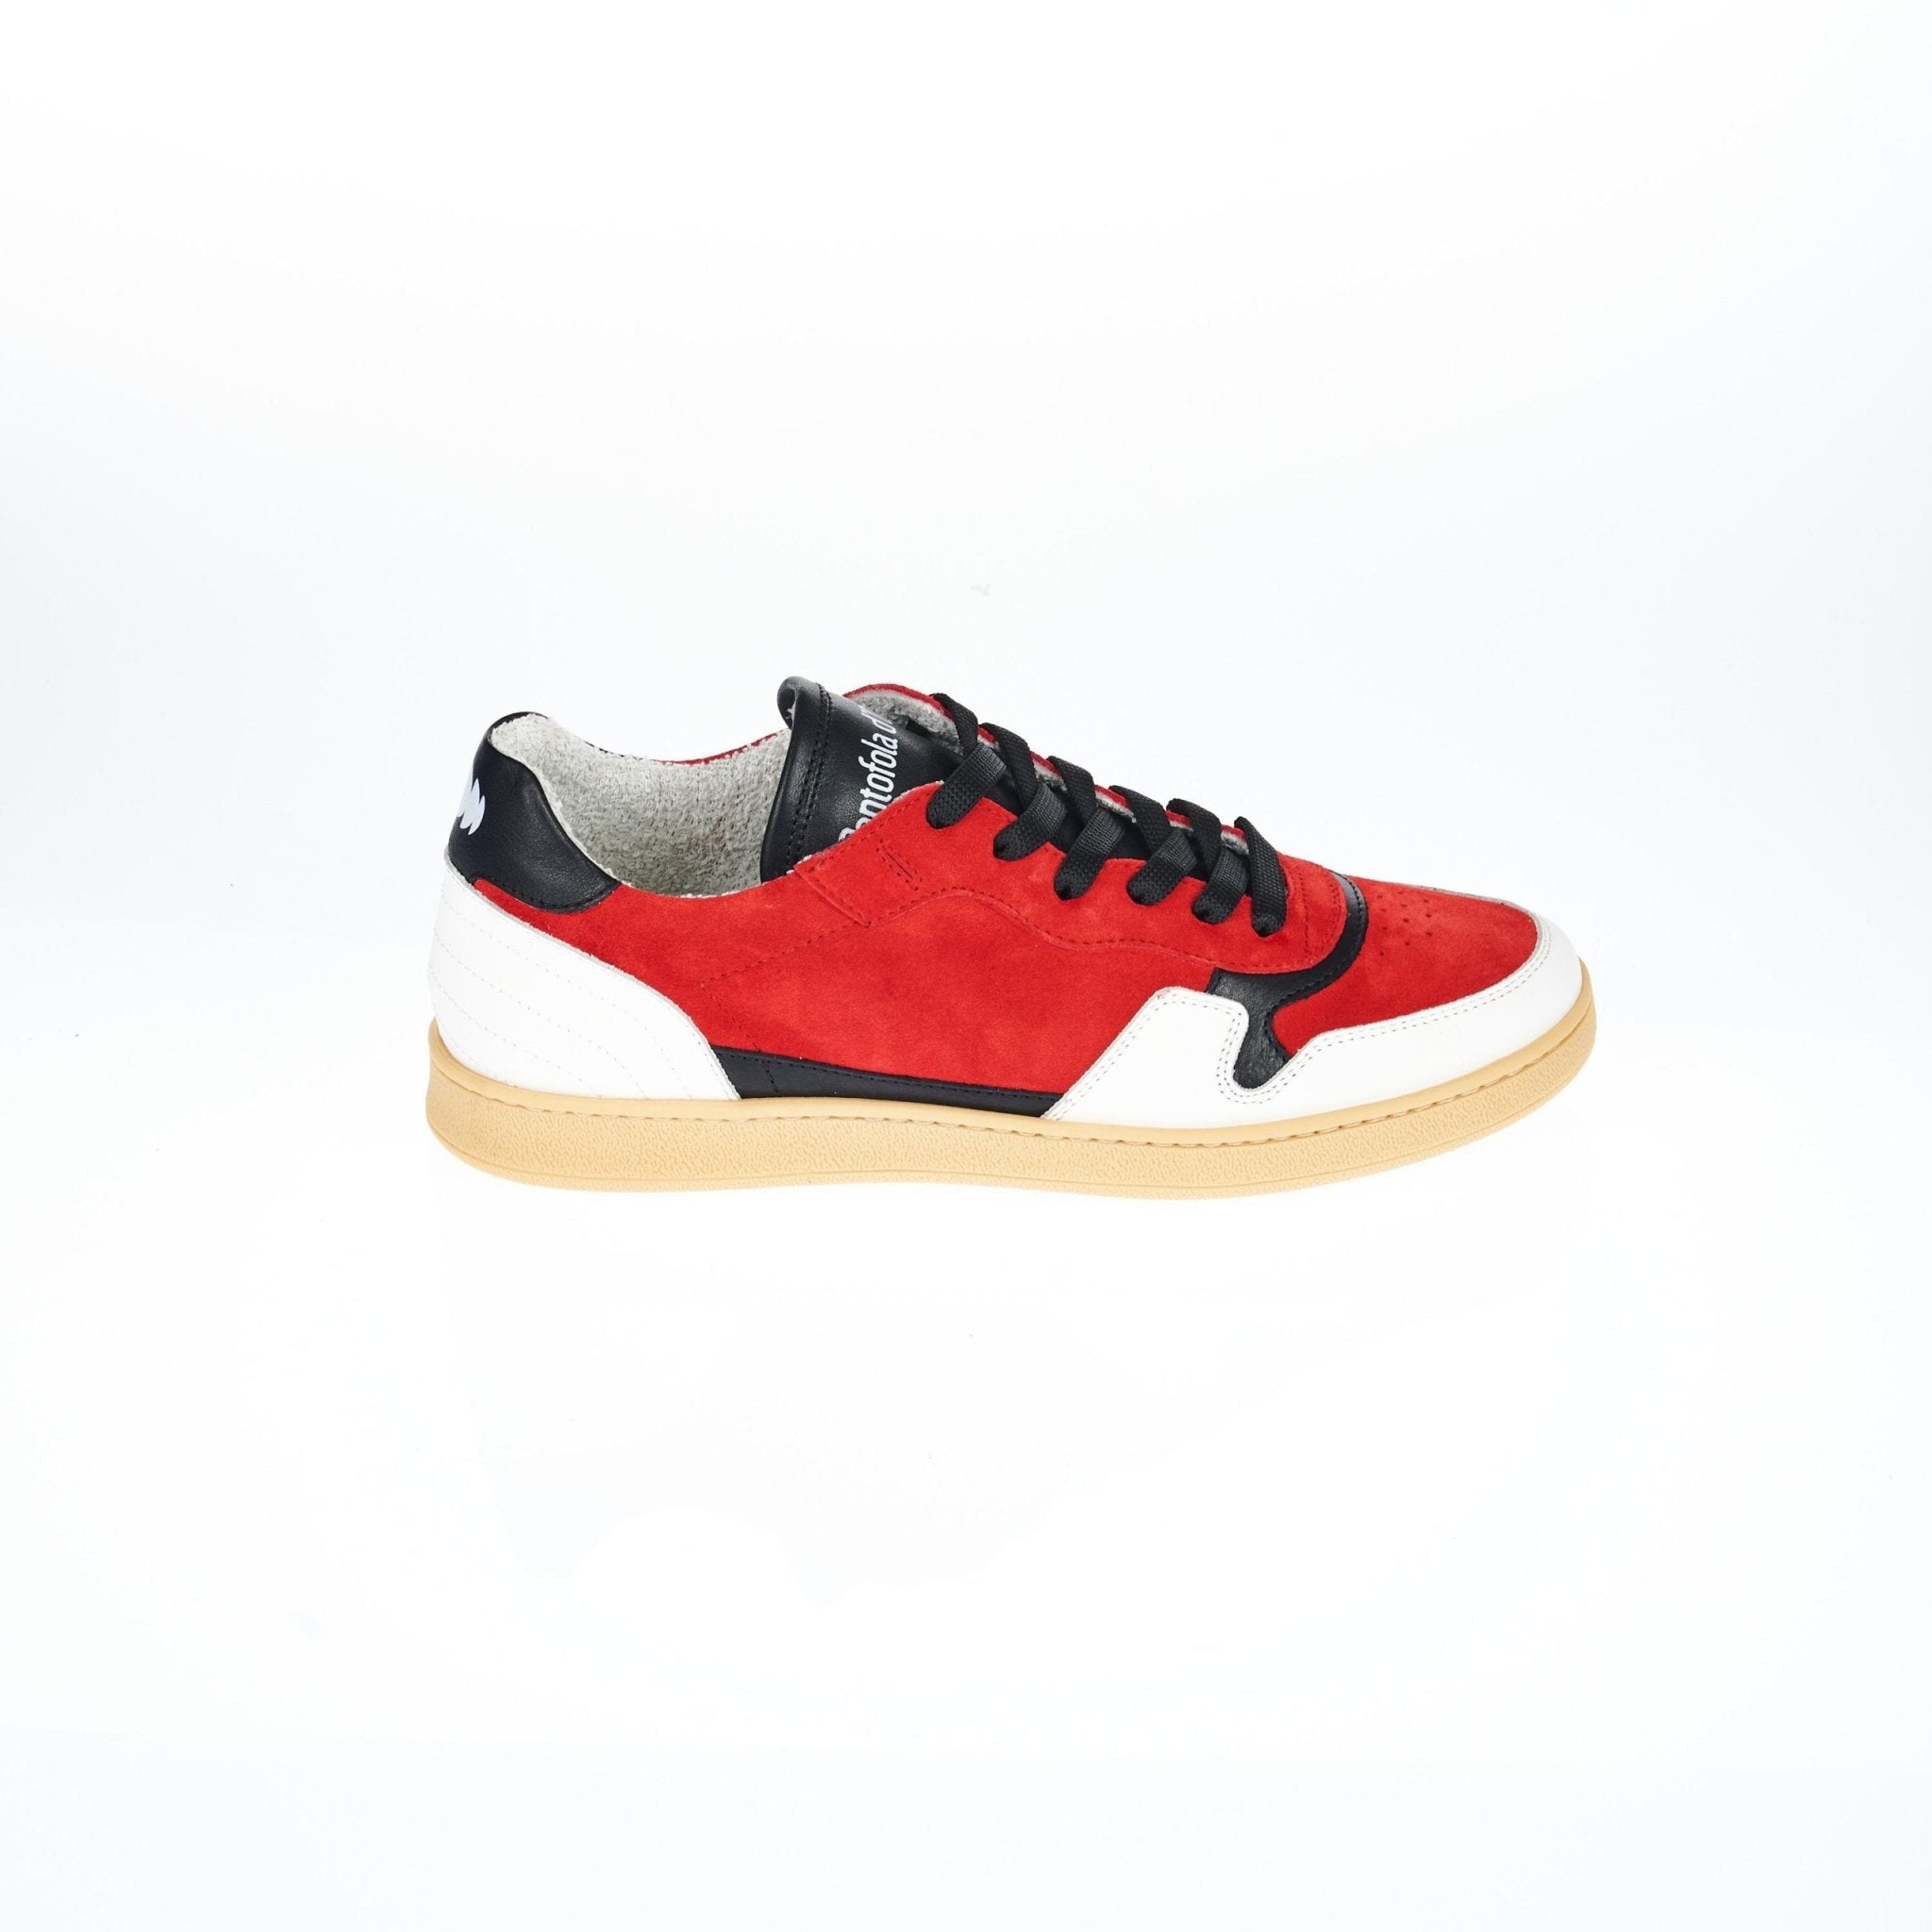 Pantofola D'Oro Red Leather Sneaker - Fizigo